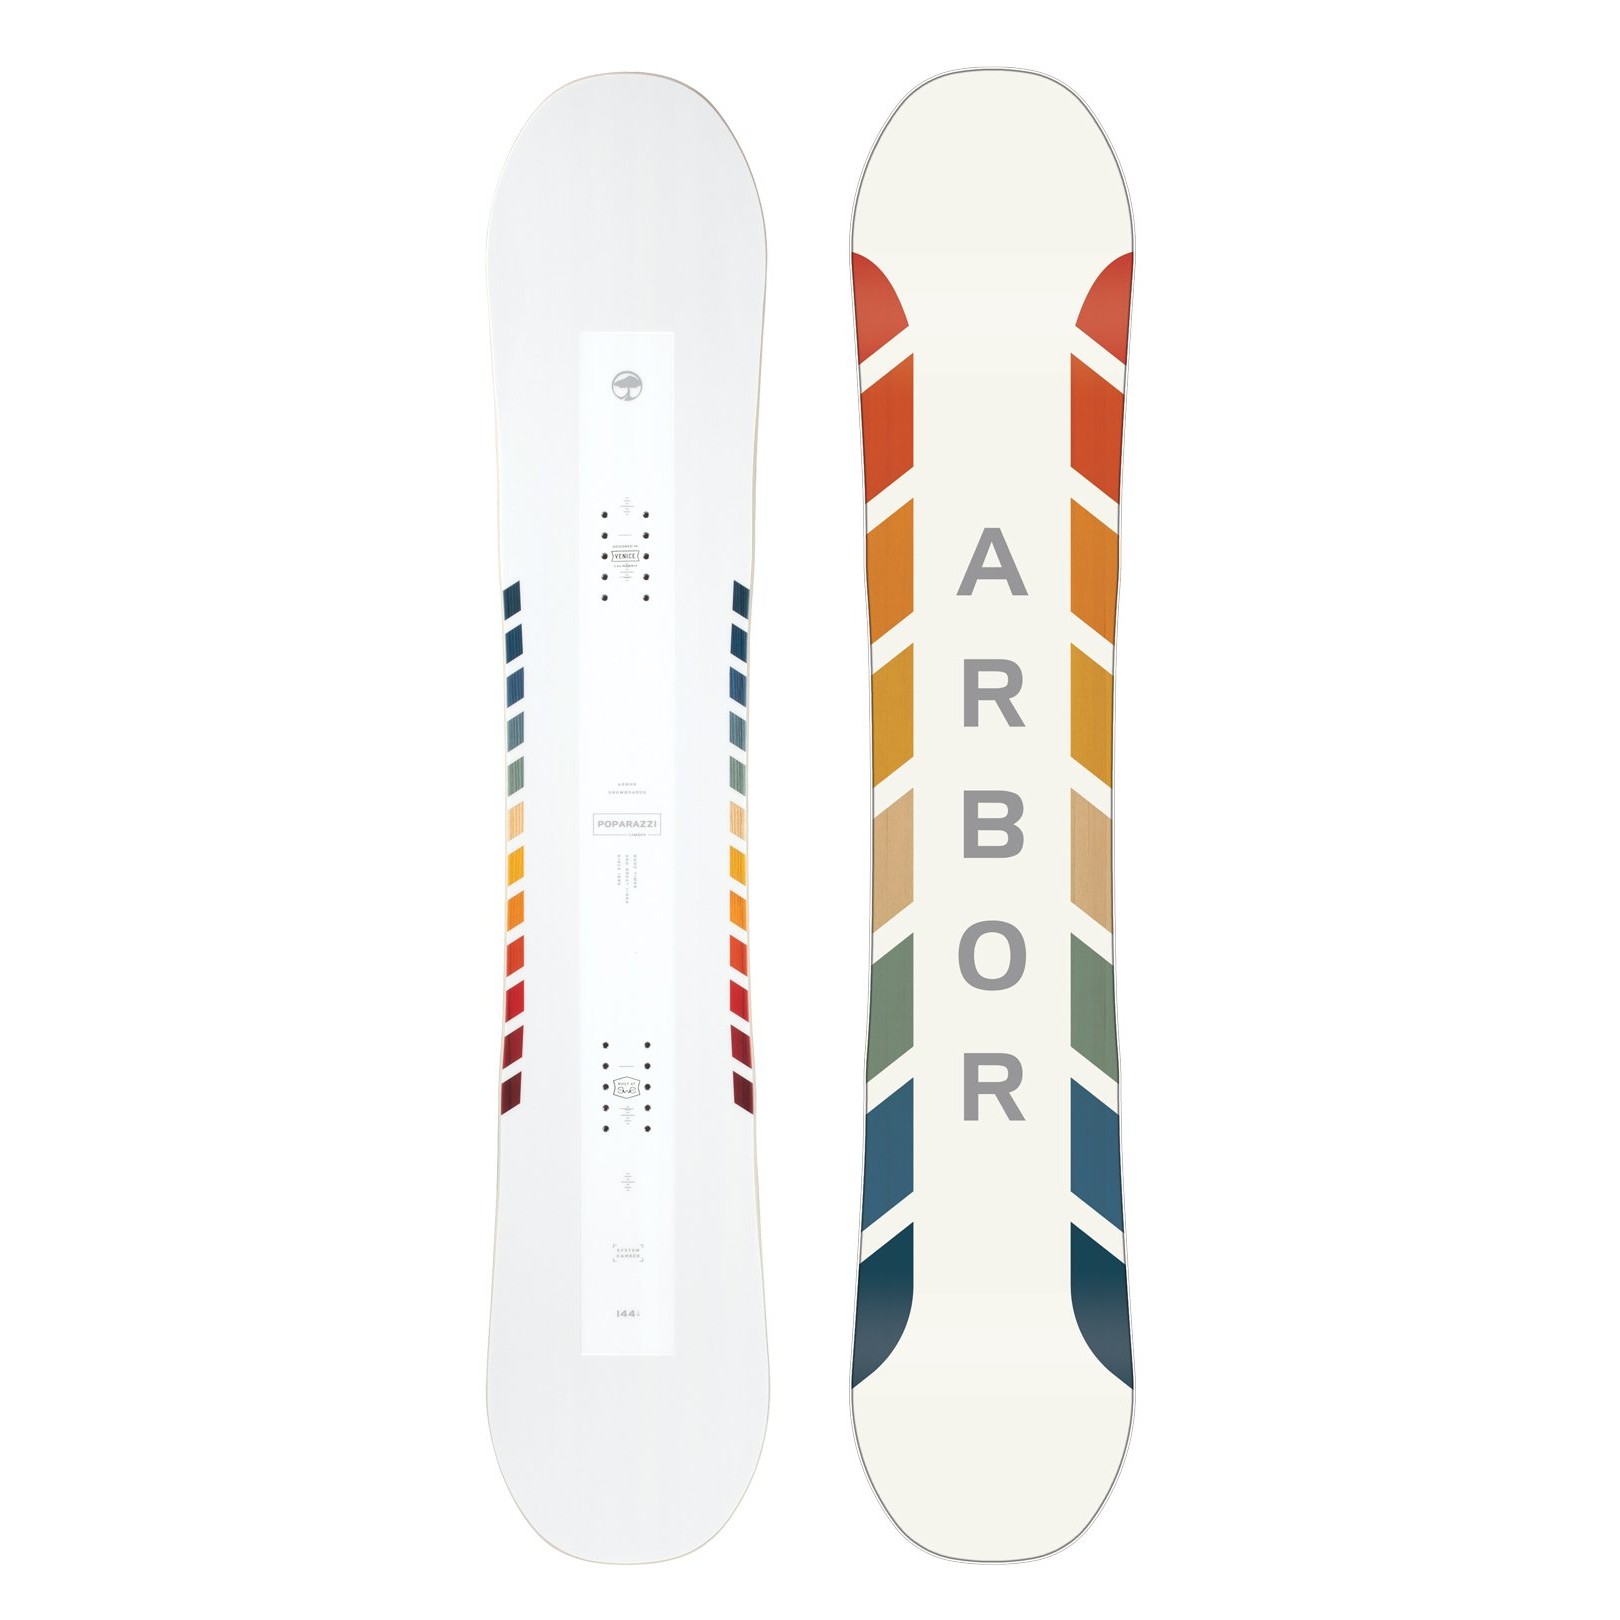 Placa snowboard Unisex Arbor Poparazzi Camber 20/21